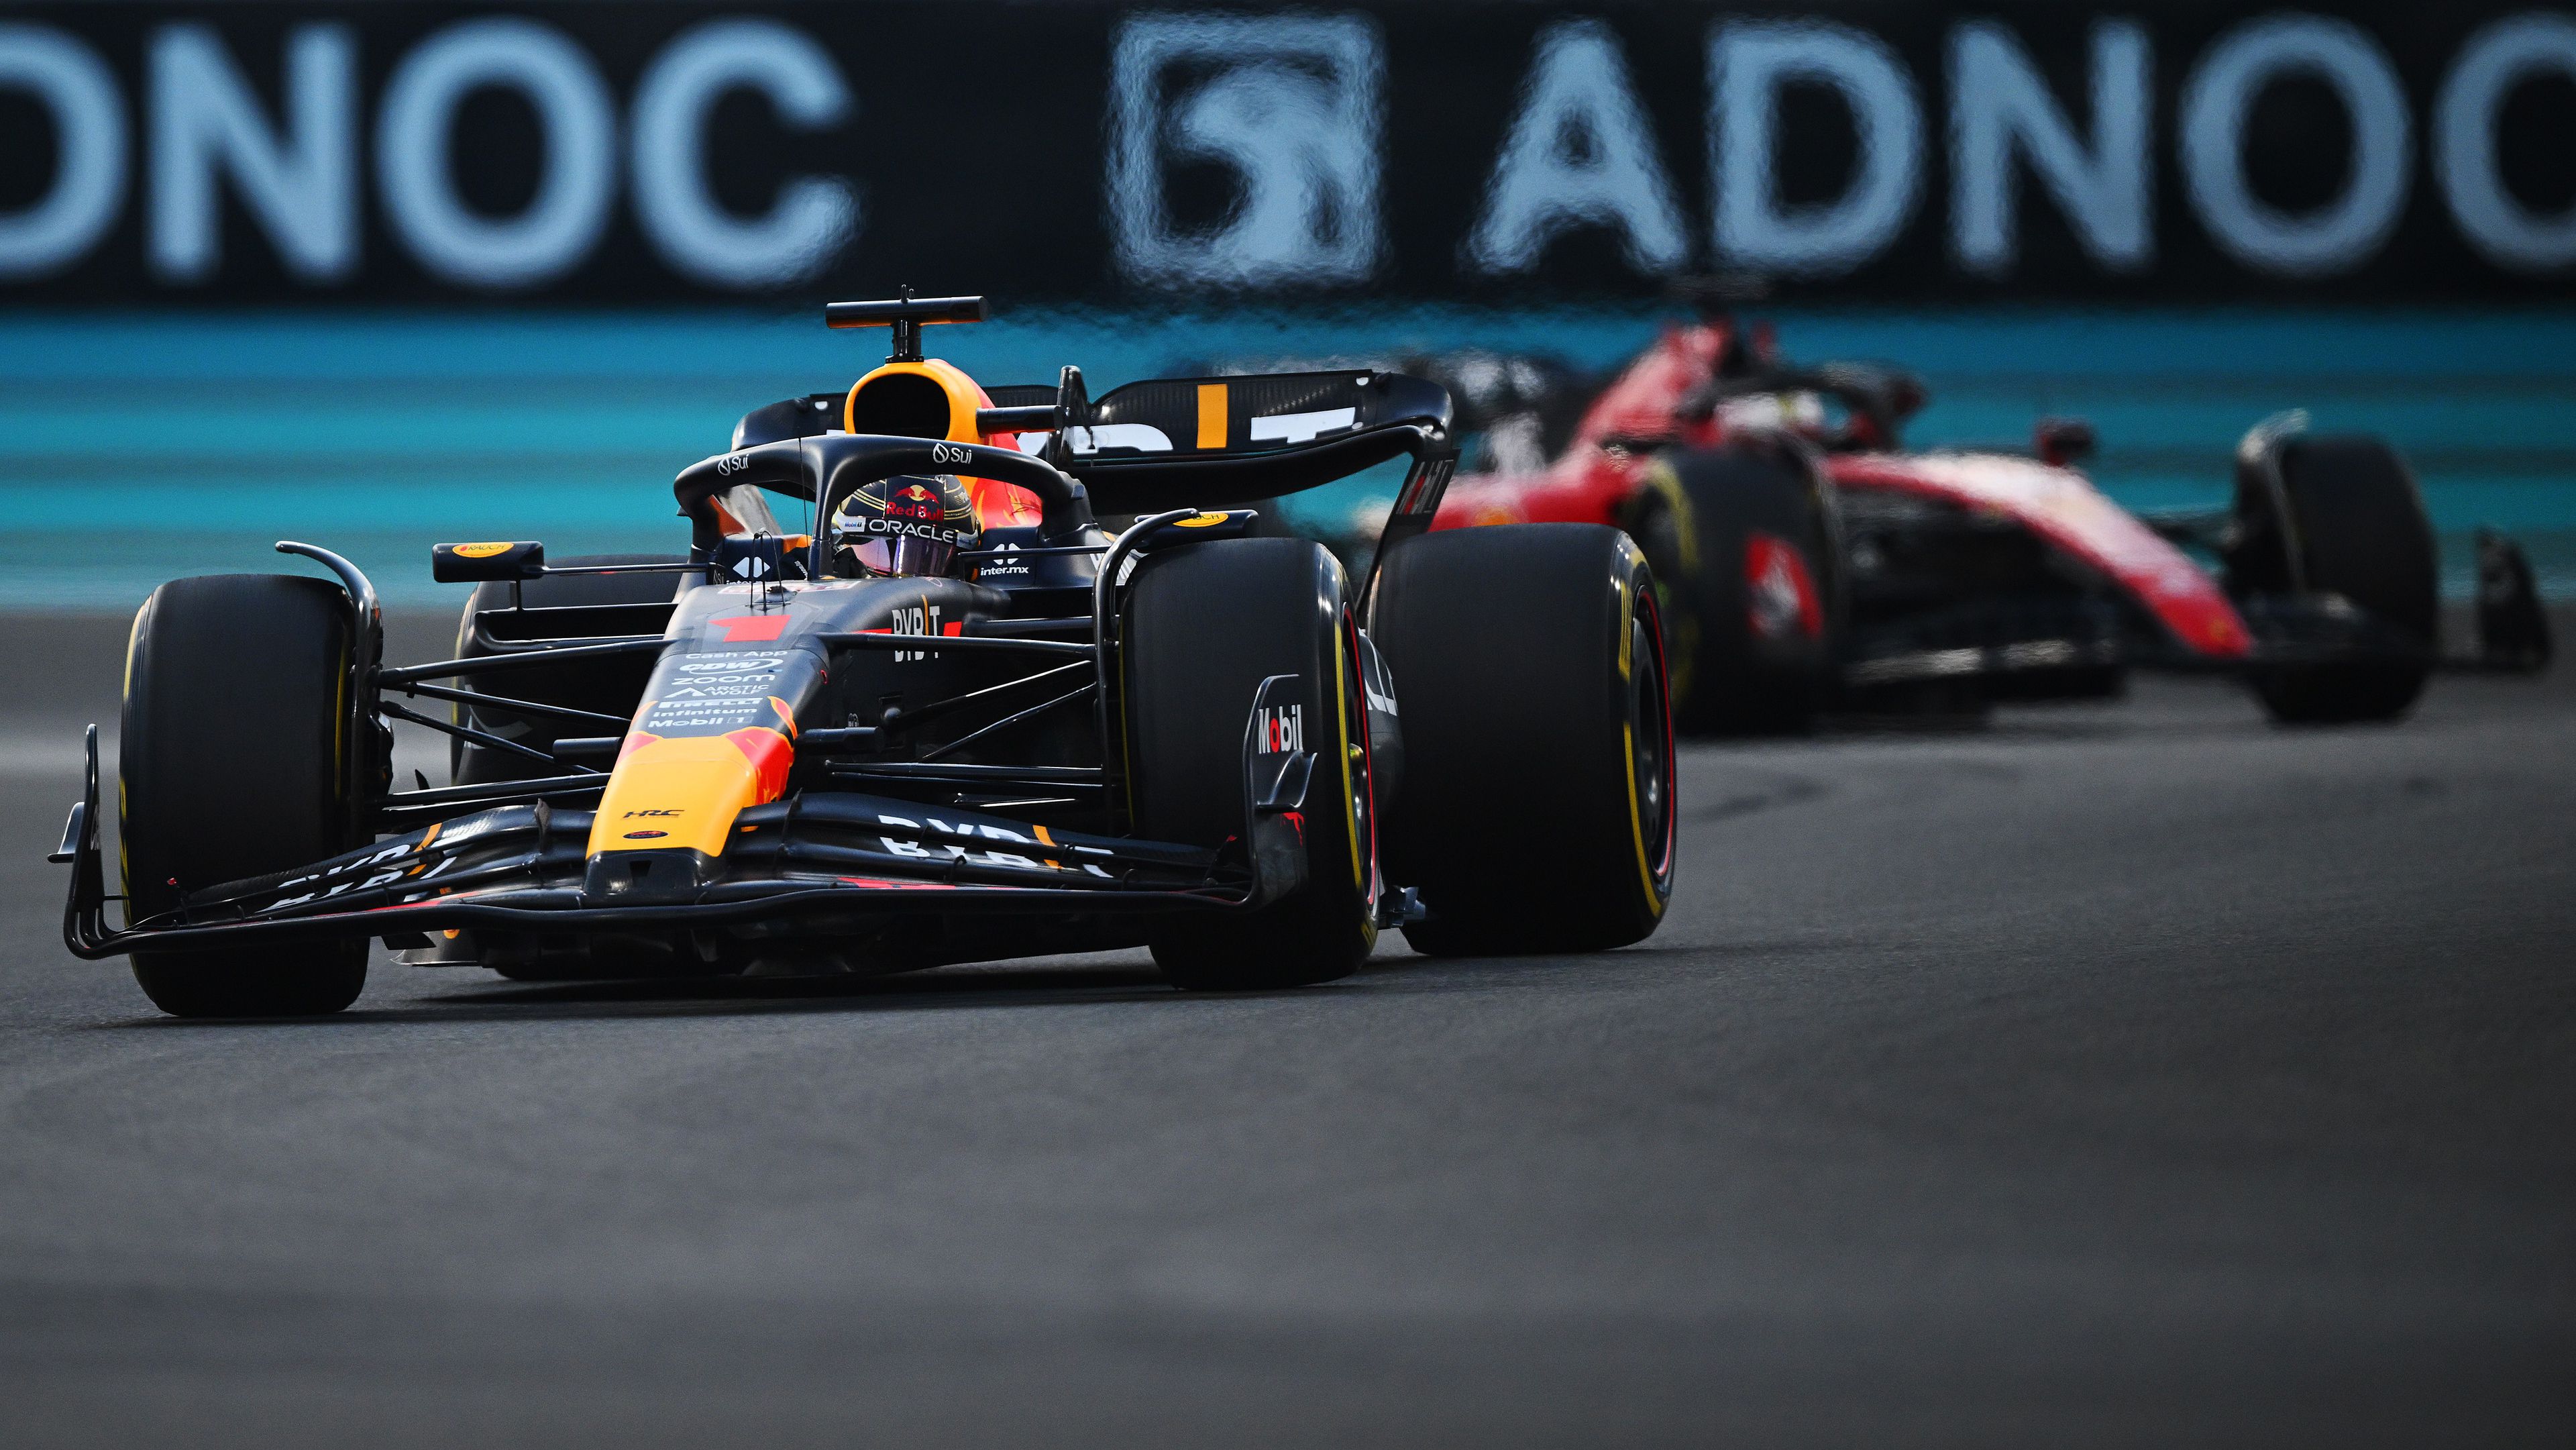 F1-hírek: Verstappen tökéletesen zárta az évet, a Mercedesé a konstruktőri második hely